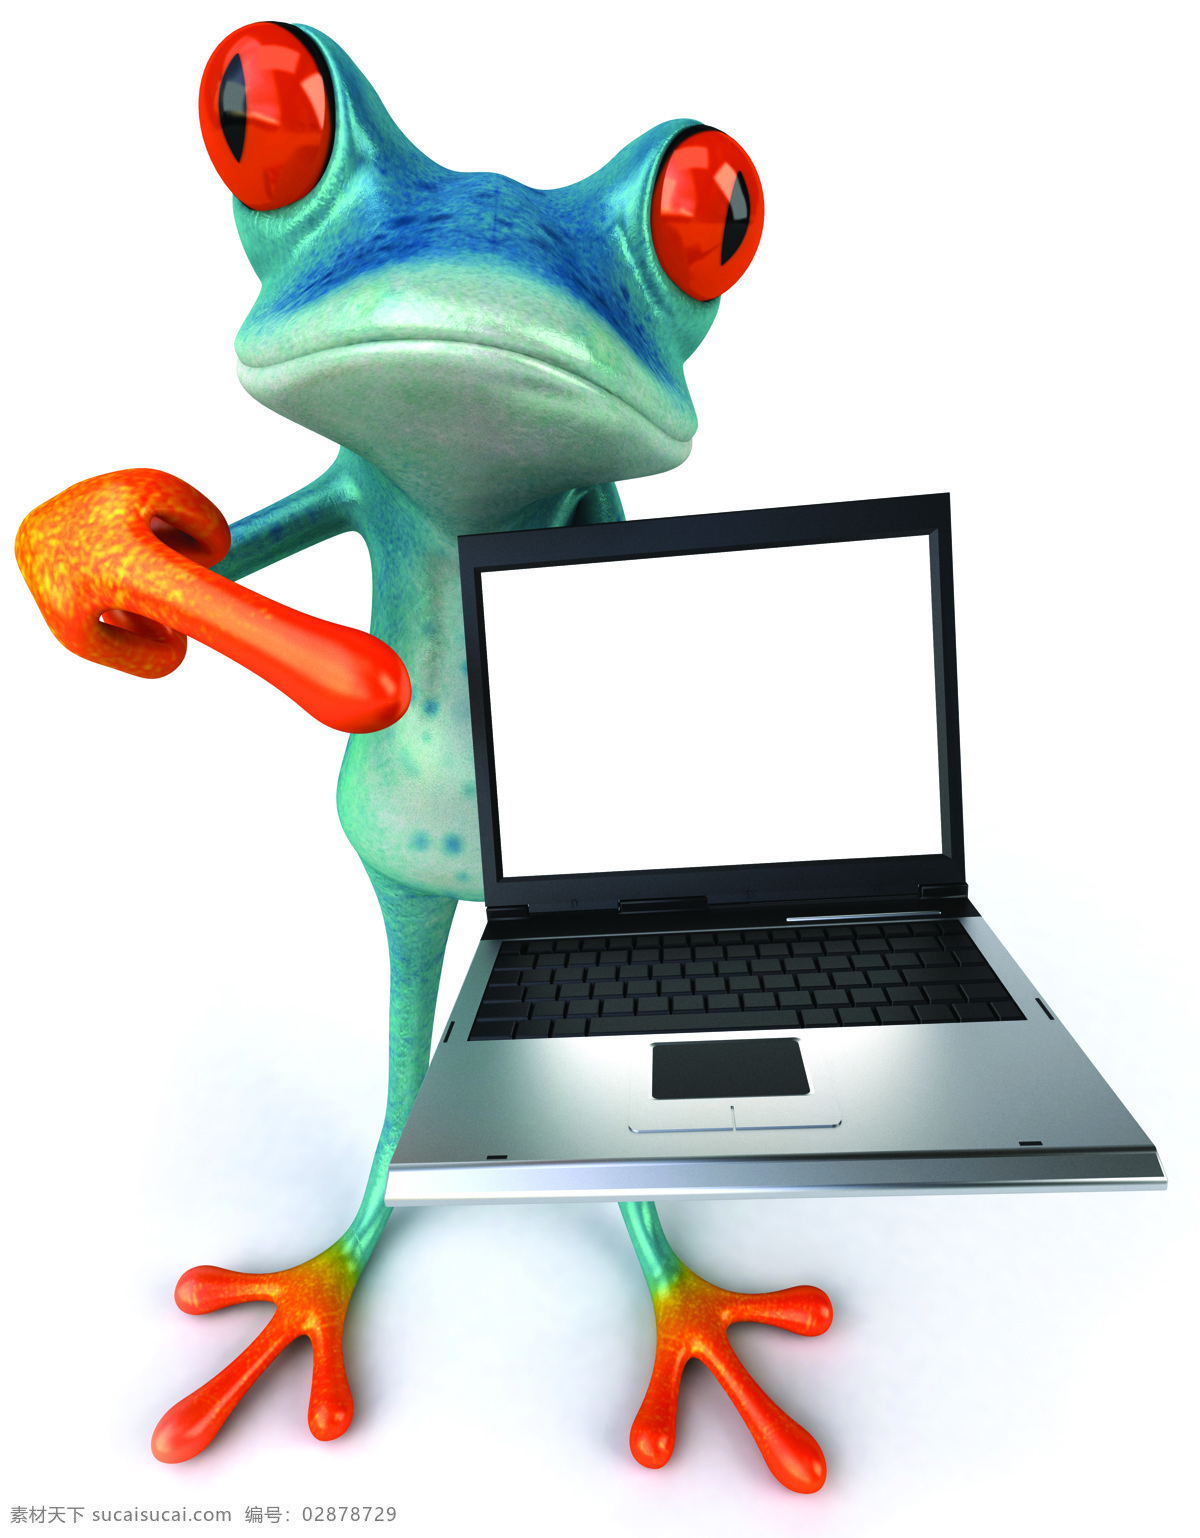 手 笔记本 电脑 青蛙 卡通青蛙 3d青蛙 3d卡通 卡通动物 陆地动物 生物世界